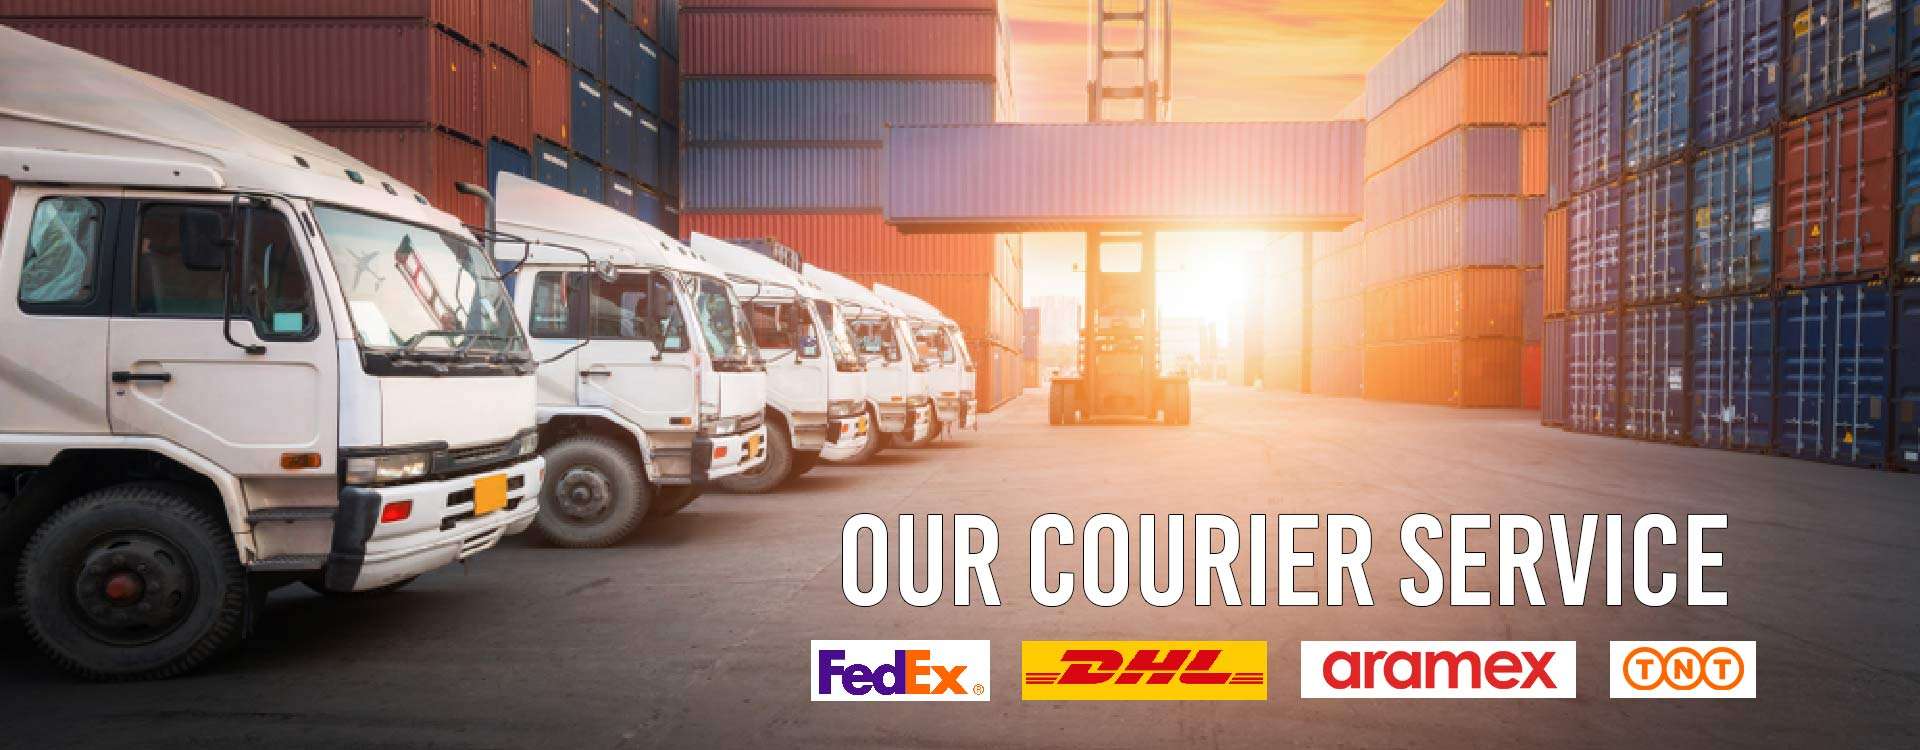 Courier service in Delhi